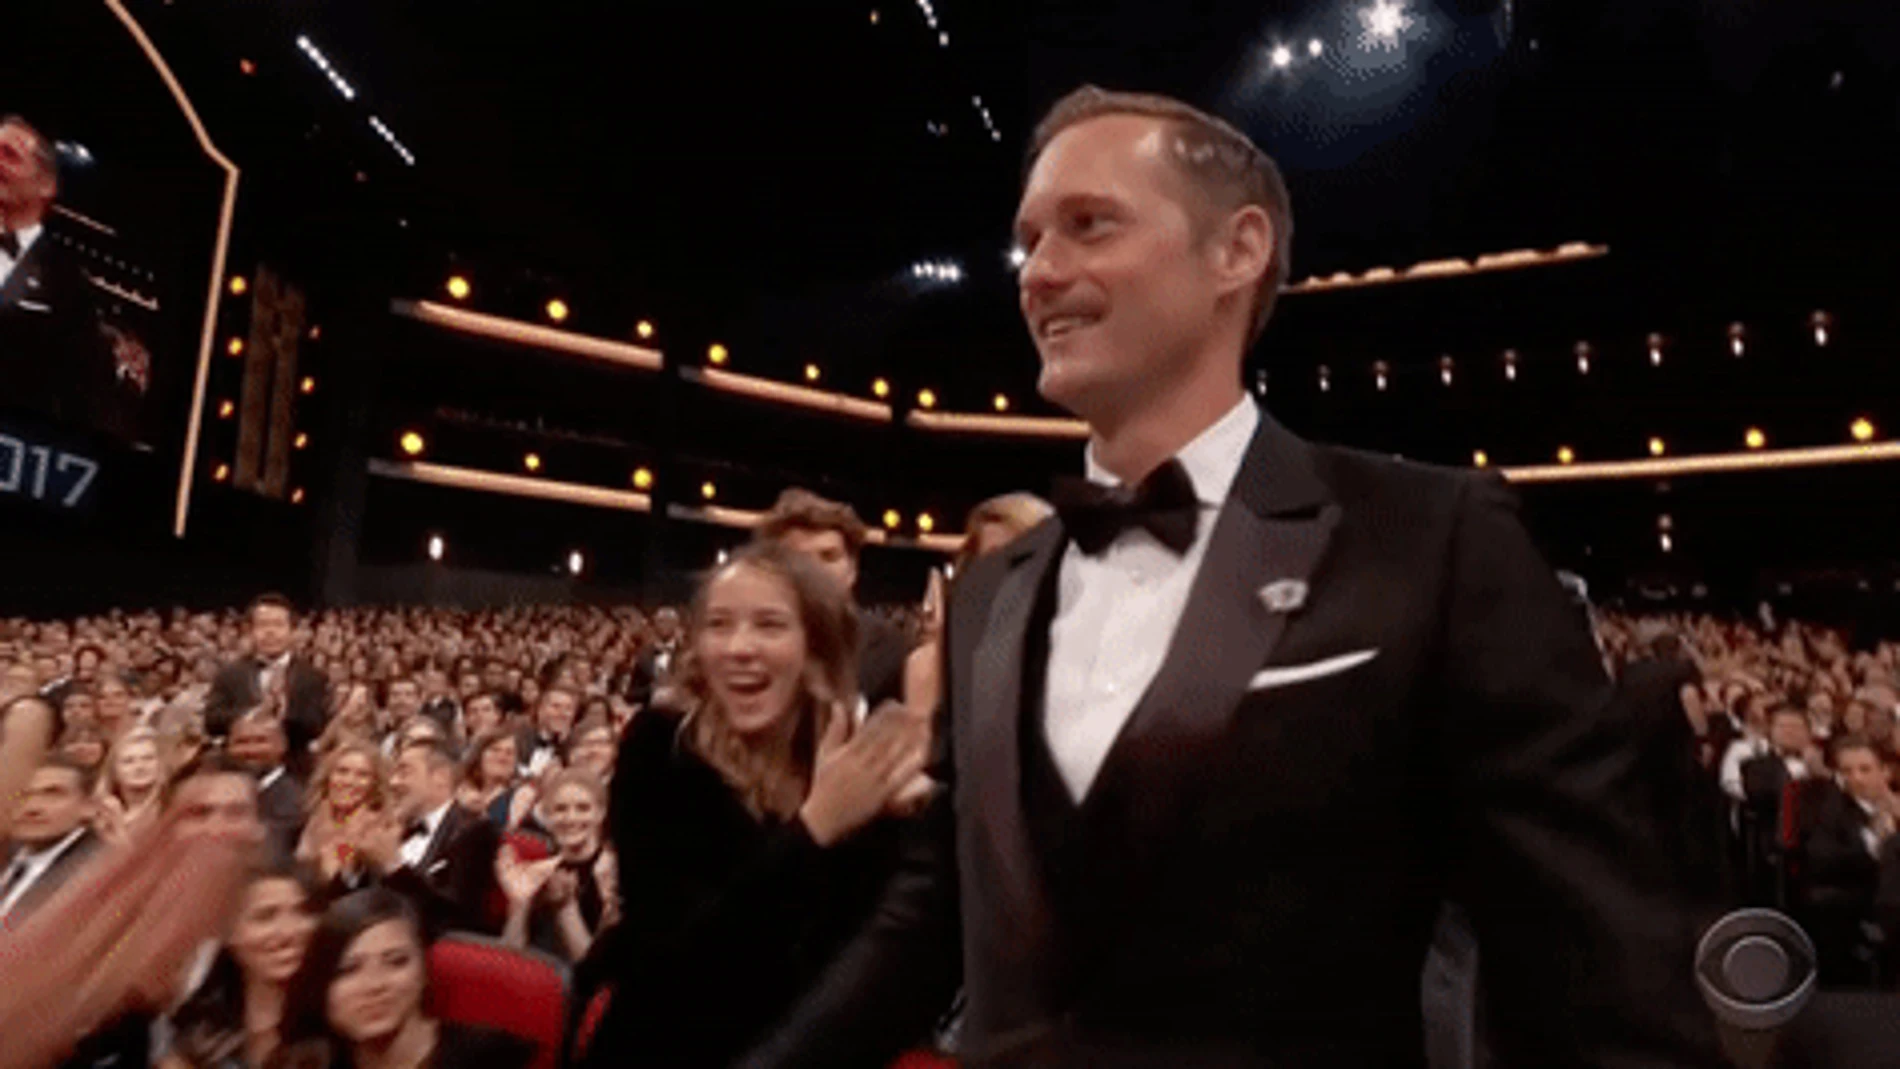 El beso de Nicole Kidman y Alexander Skarsgård, momentazo en los Emmy